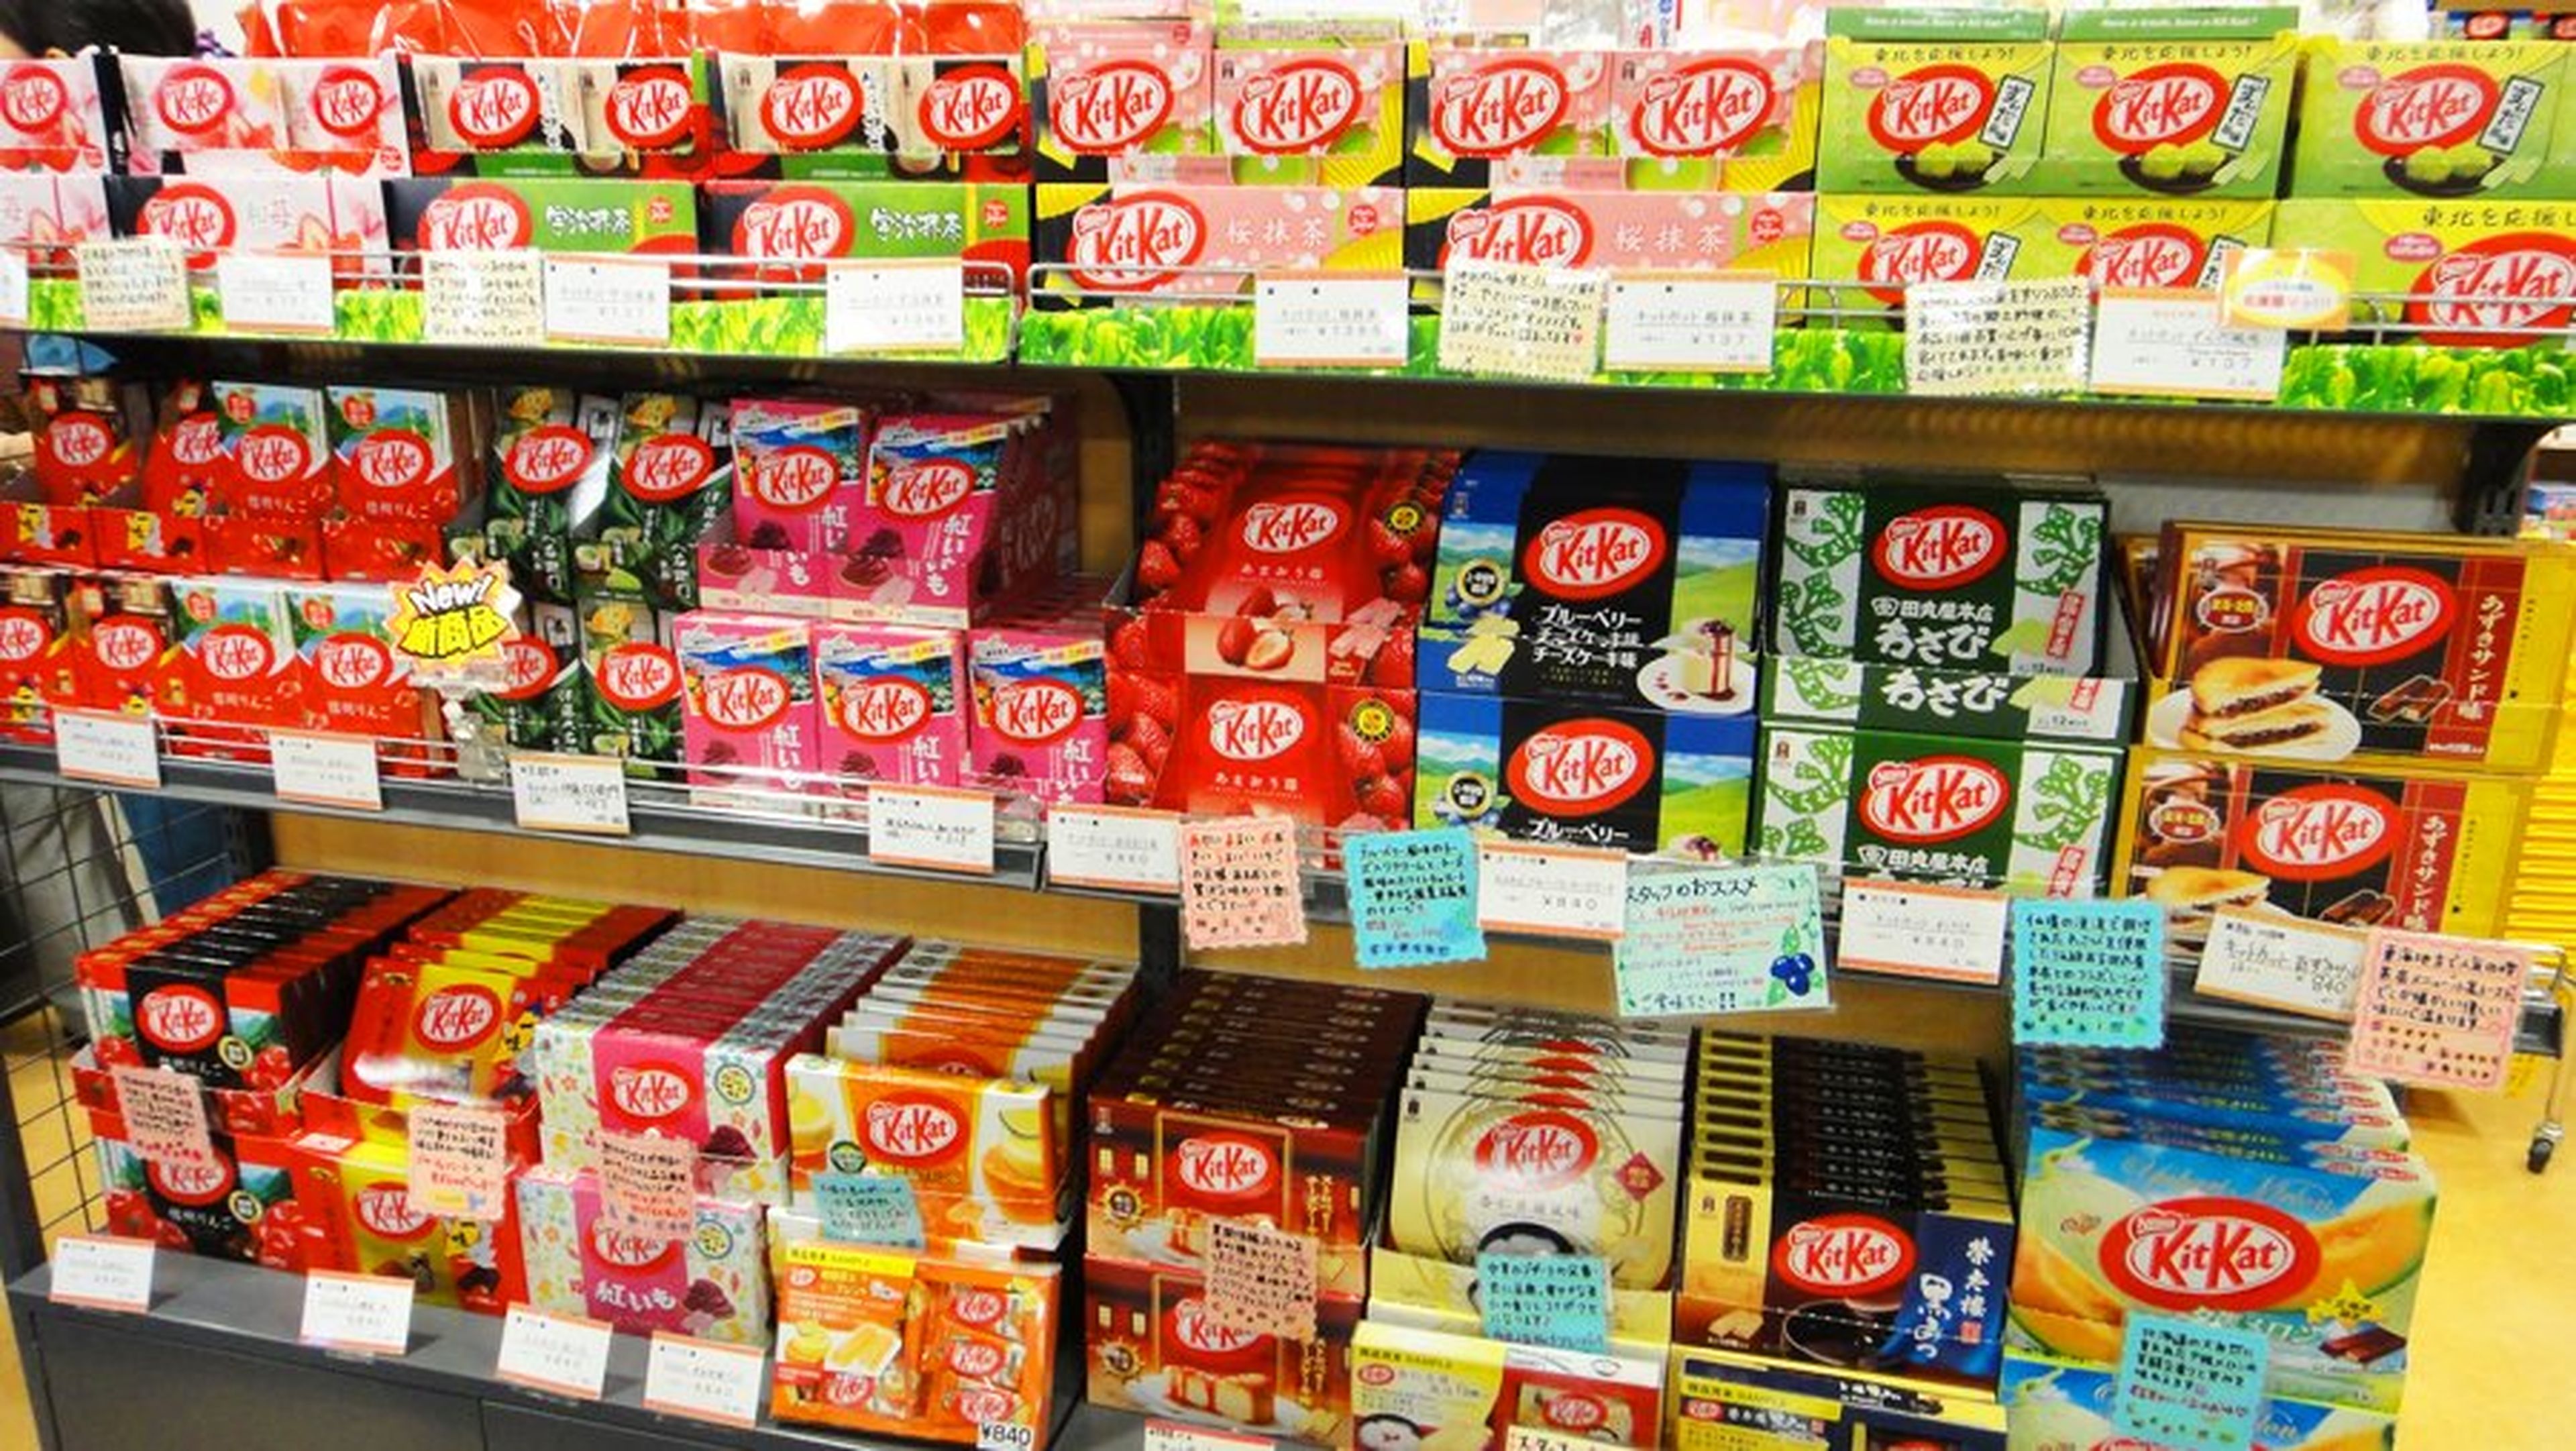 Estantería de KitKat en Japón.